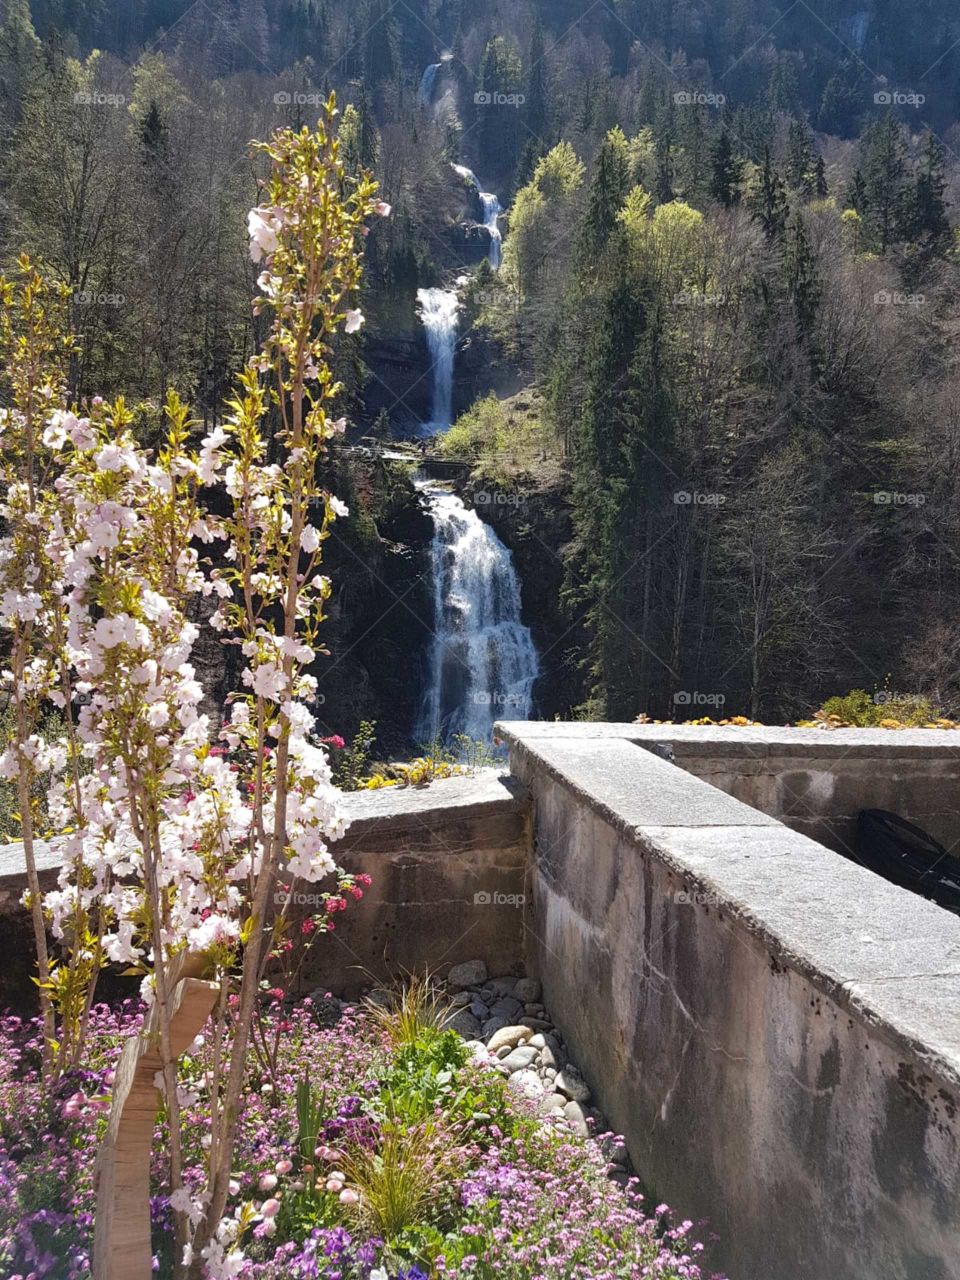 Waterfall in Switzerland 